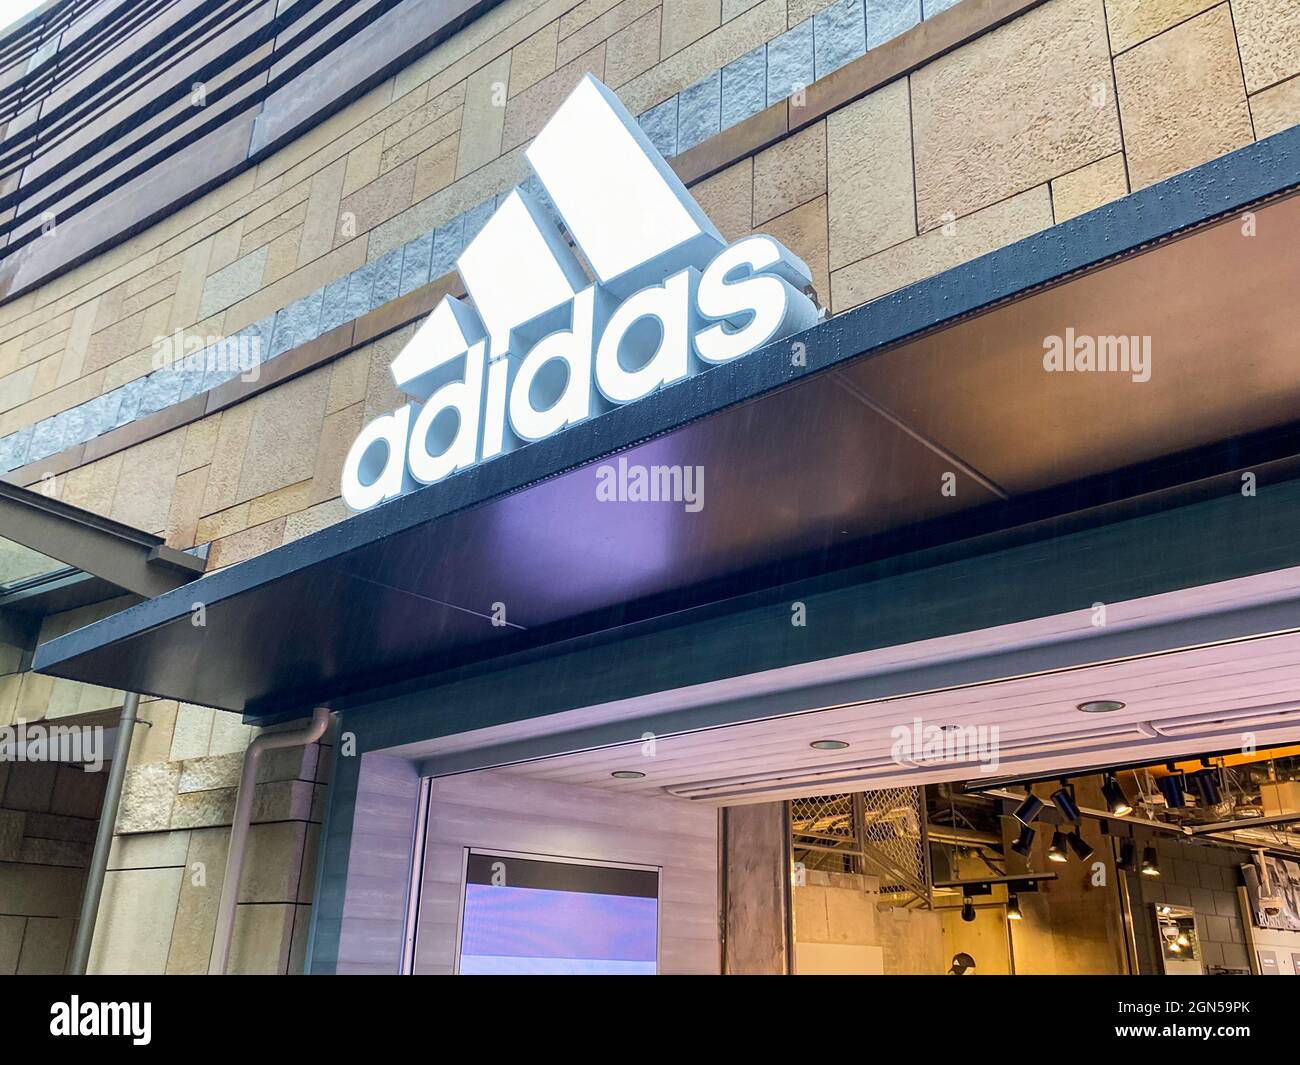 Aanhankelijk verzonden Makkelijk te begrijpen Adidas store logo hi-res stock photography and images - Alamy